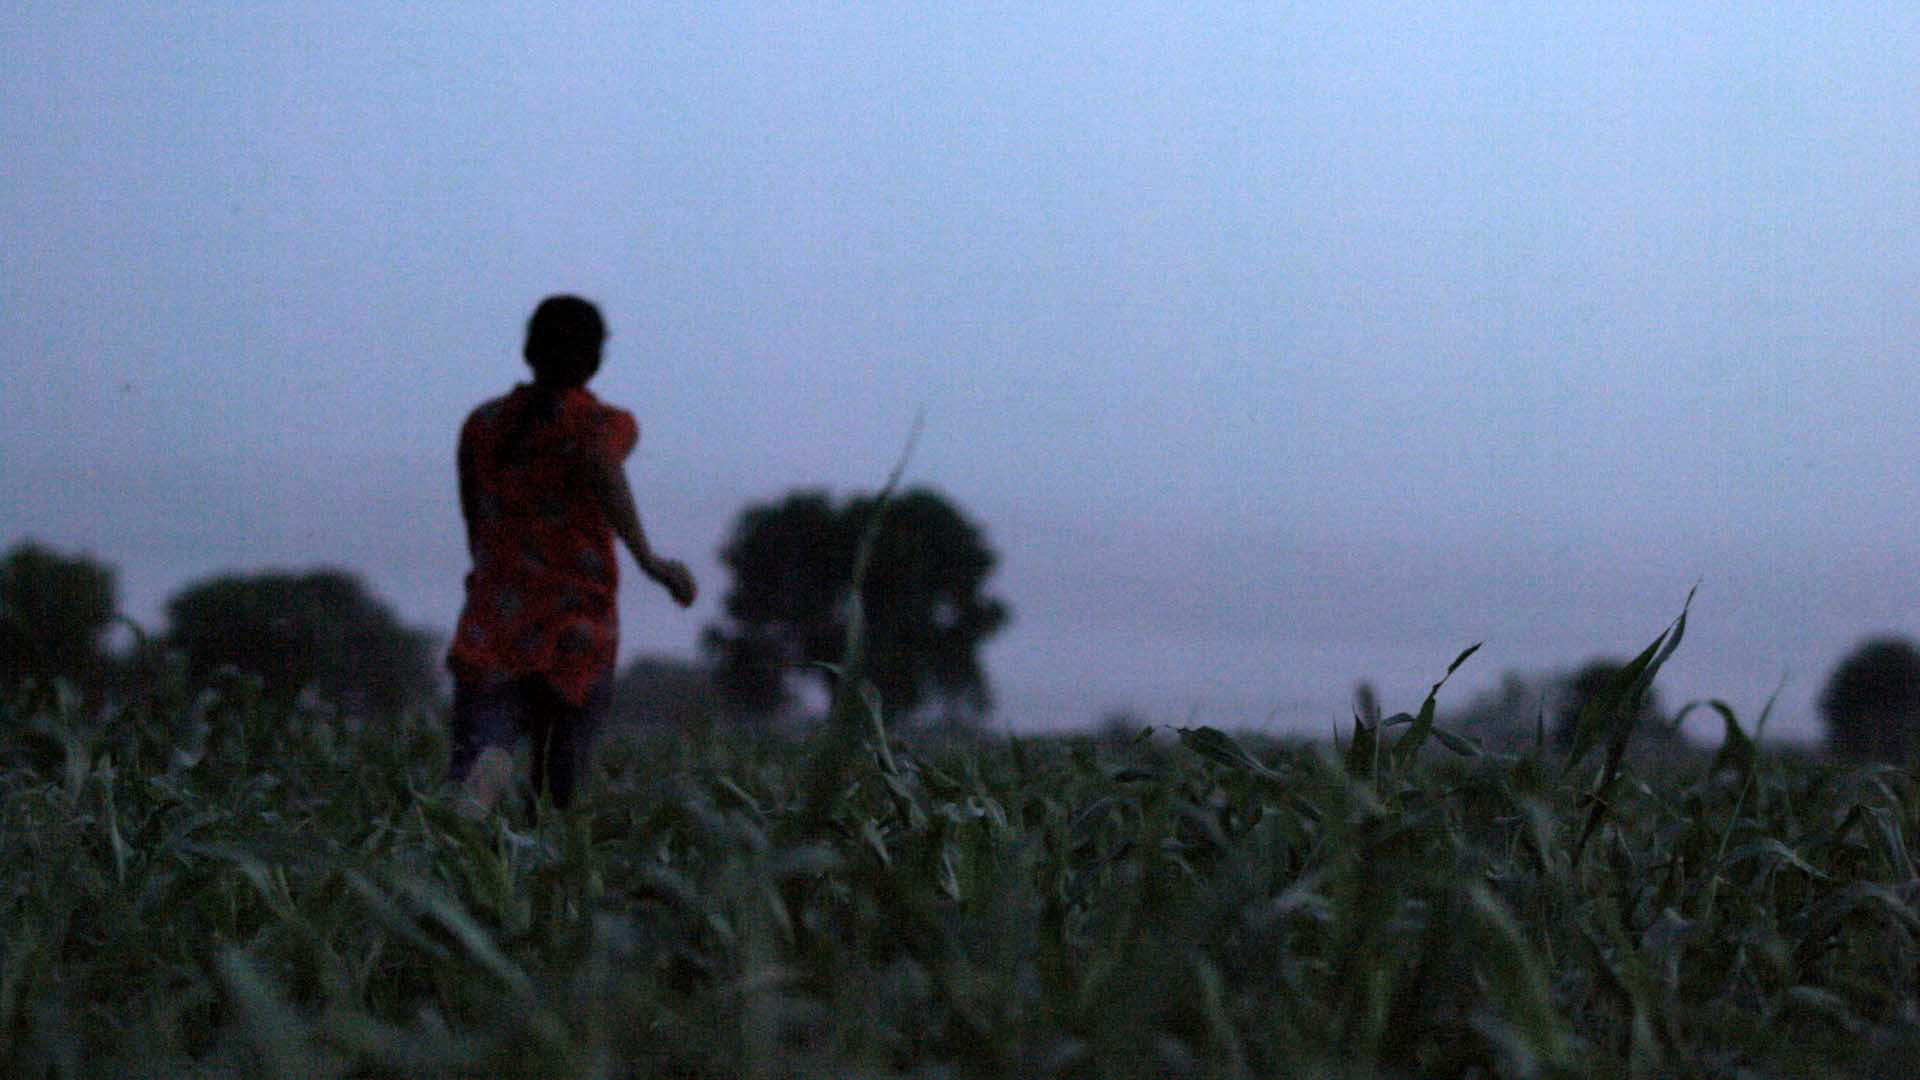 Dehati Xxxx Rape Videos - FRONTLINE | India's Rape Scandal | Season 2021 | Episode 15 | PBS